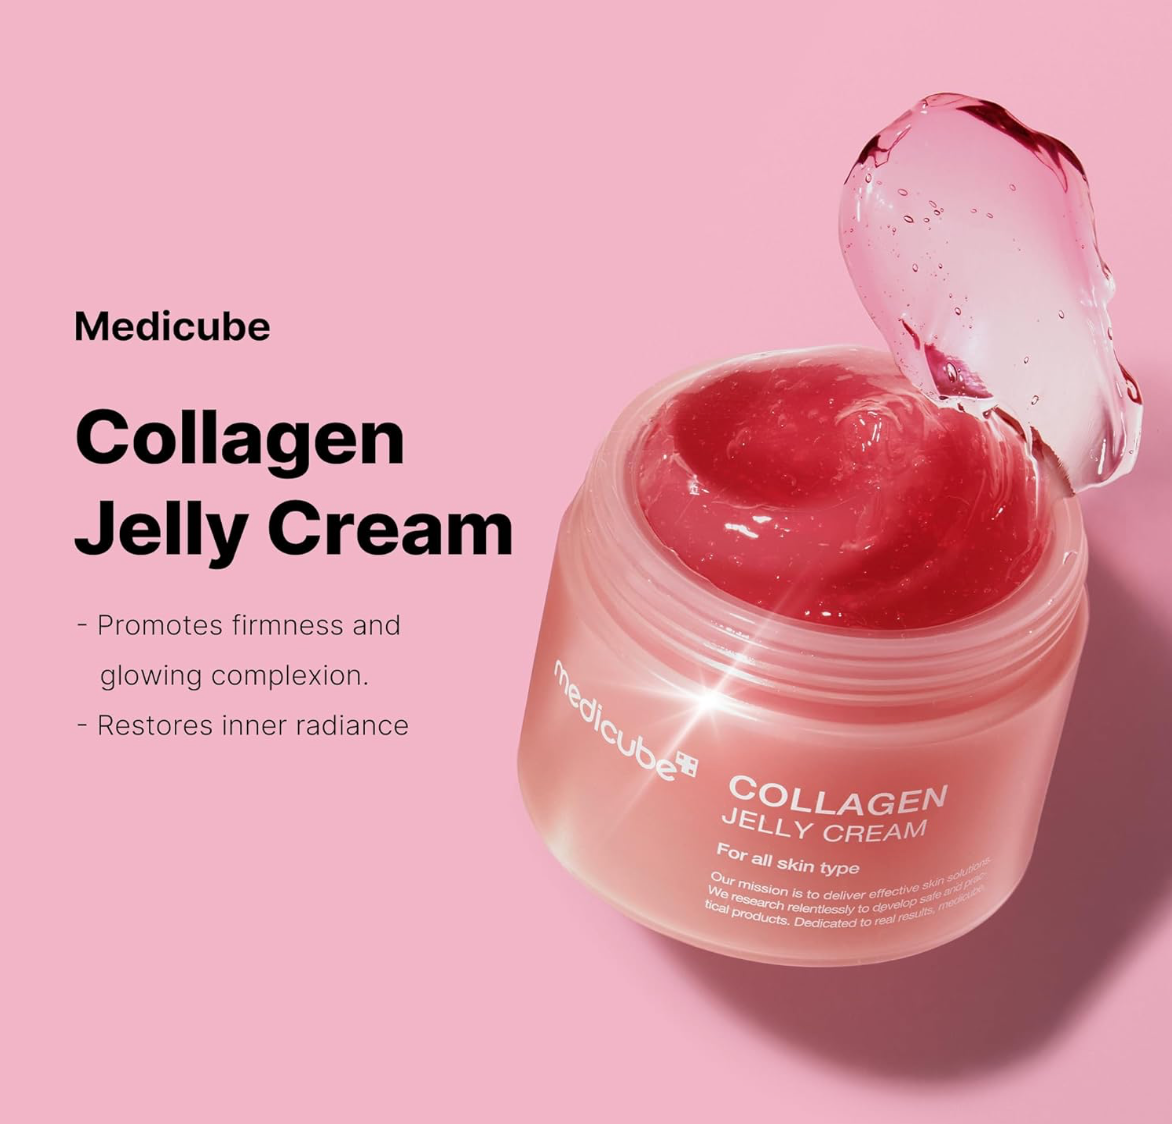 Collagen Jelly Cream